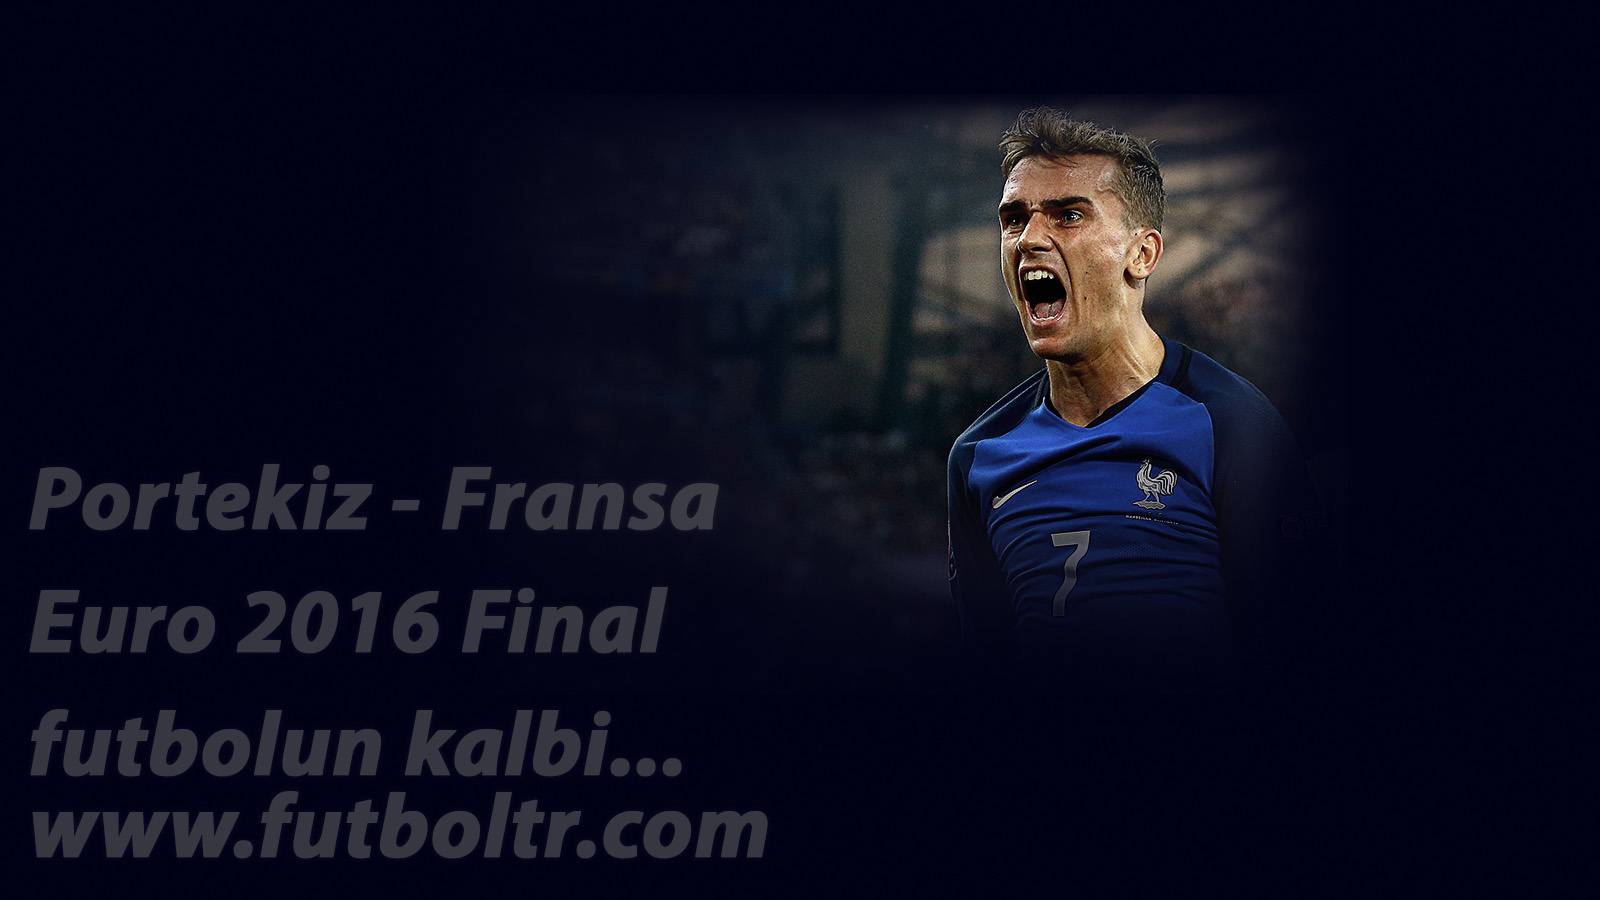 Fransa Portekiz Euro 2016 Final Maçı Yorumu (10 Temmuz 2016) İddaa Tahmini